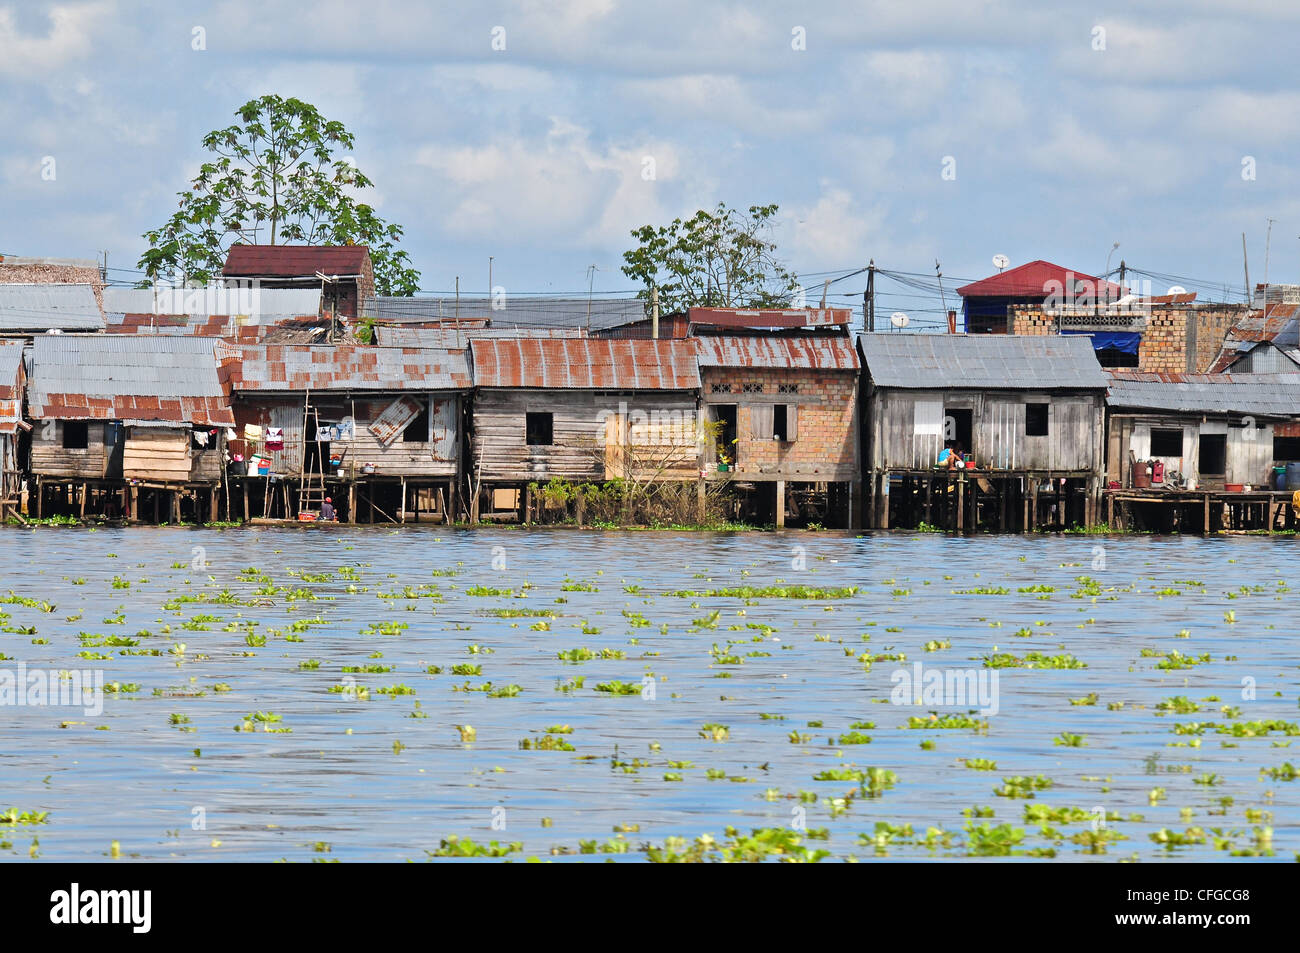 Arme Menschen bauen Hütten auf Stelzen in überschwemmten Gebieten des  Amazonas Stockfotografie - Alamy